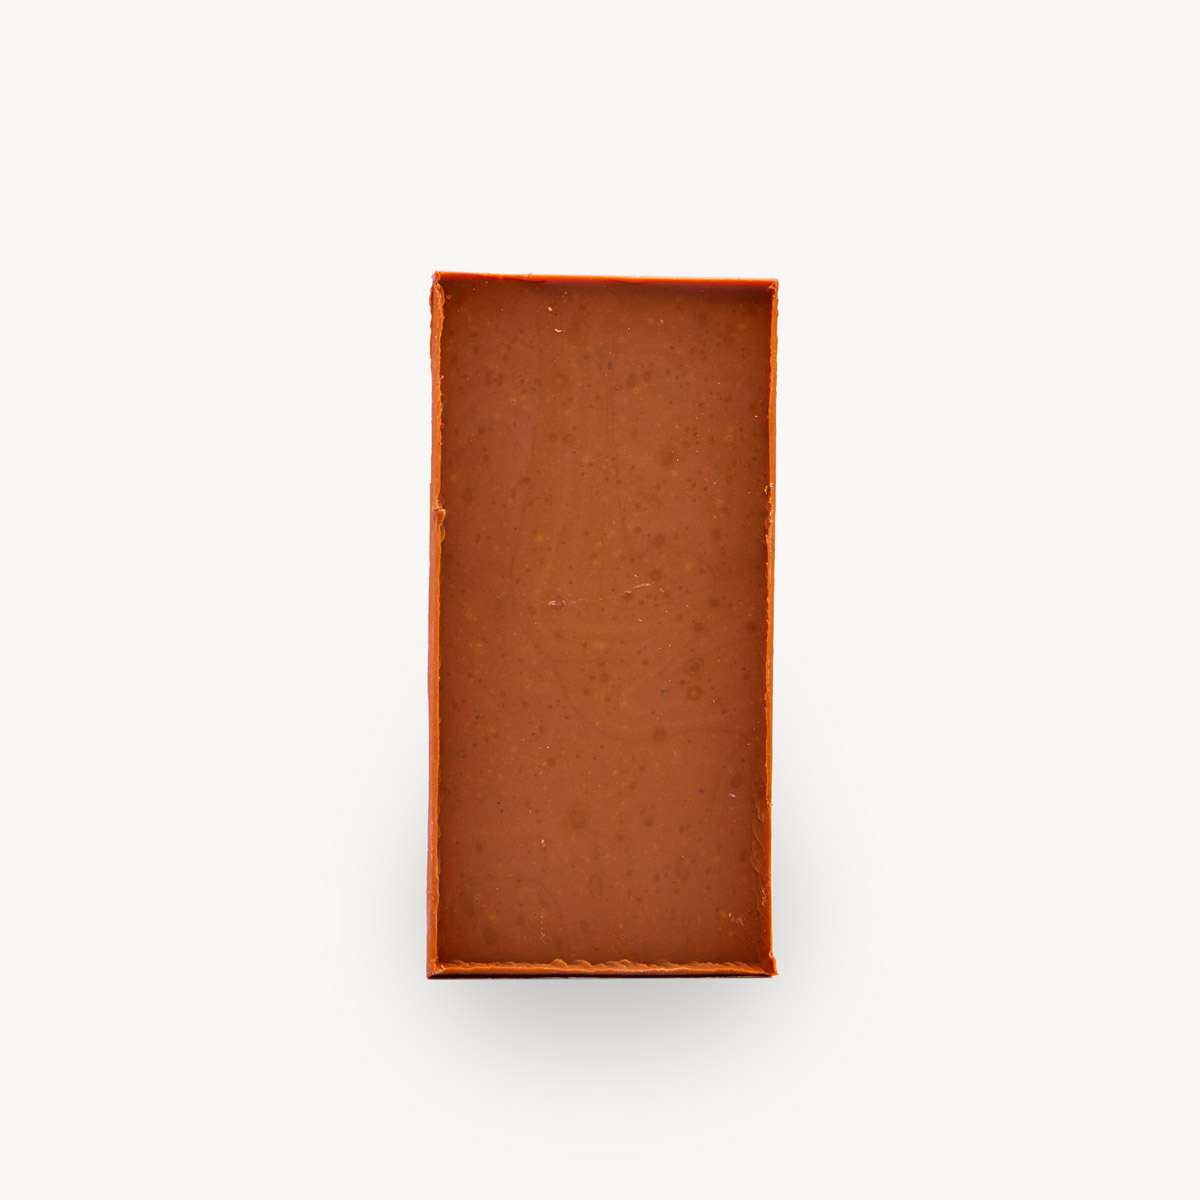 Σοκολάτα Tahini, φωτογραφία προϊόντος χωρίς το περιτύλιγμα.